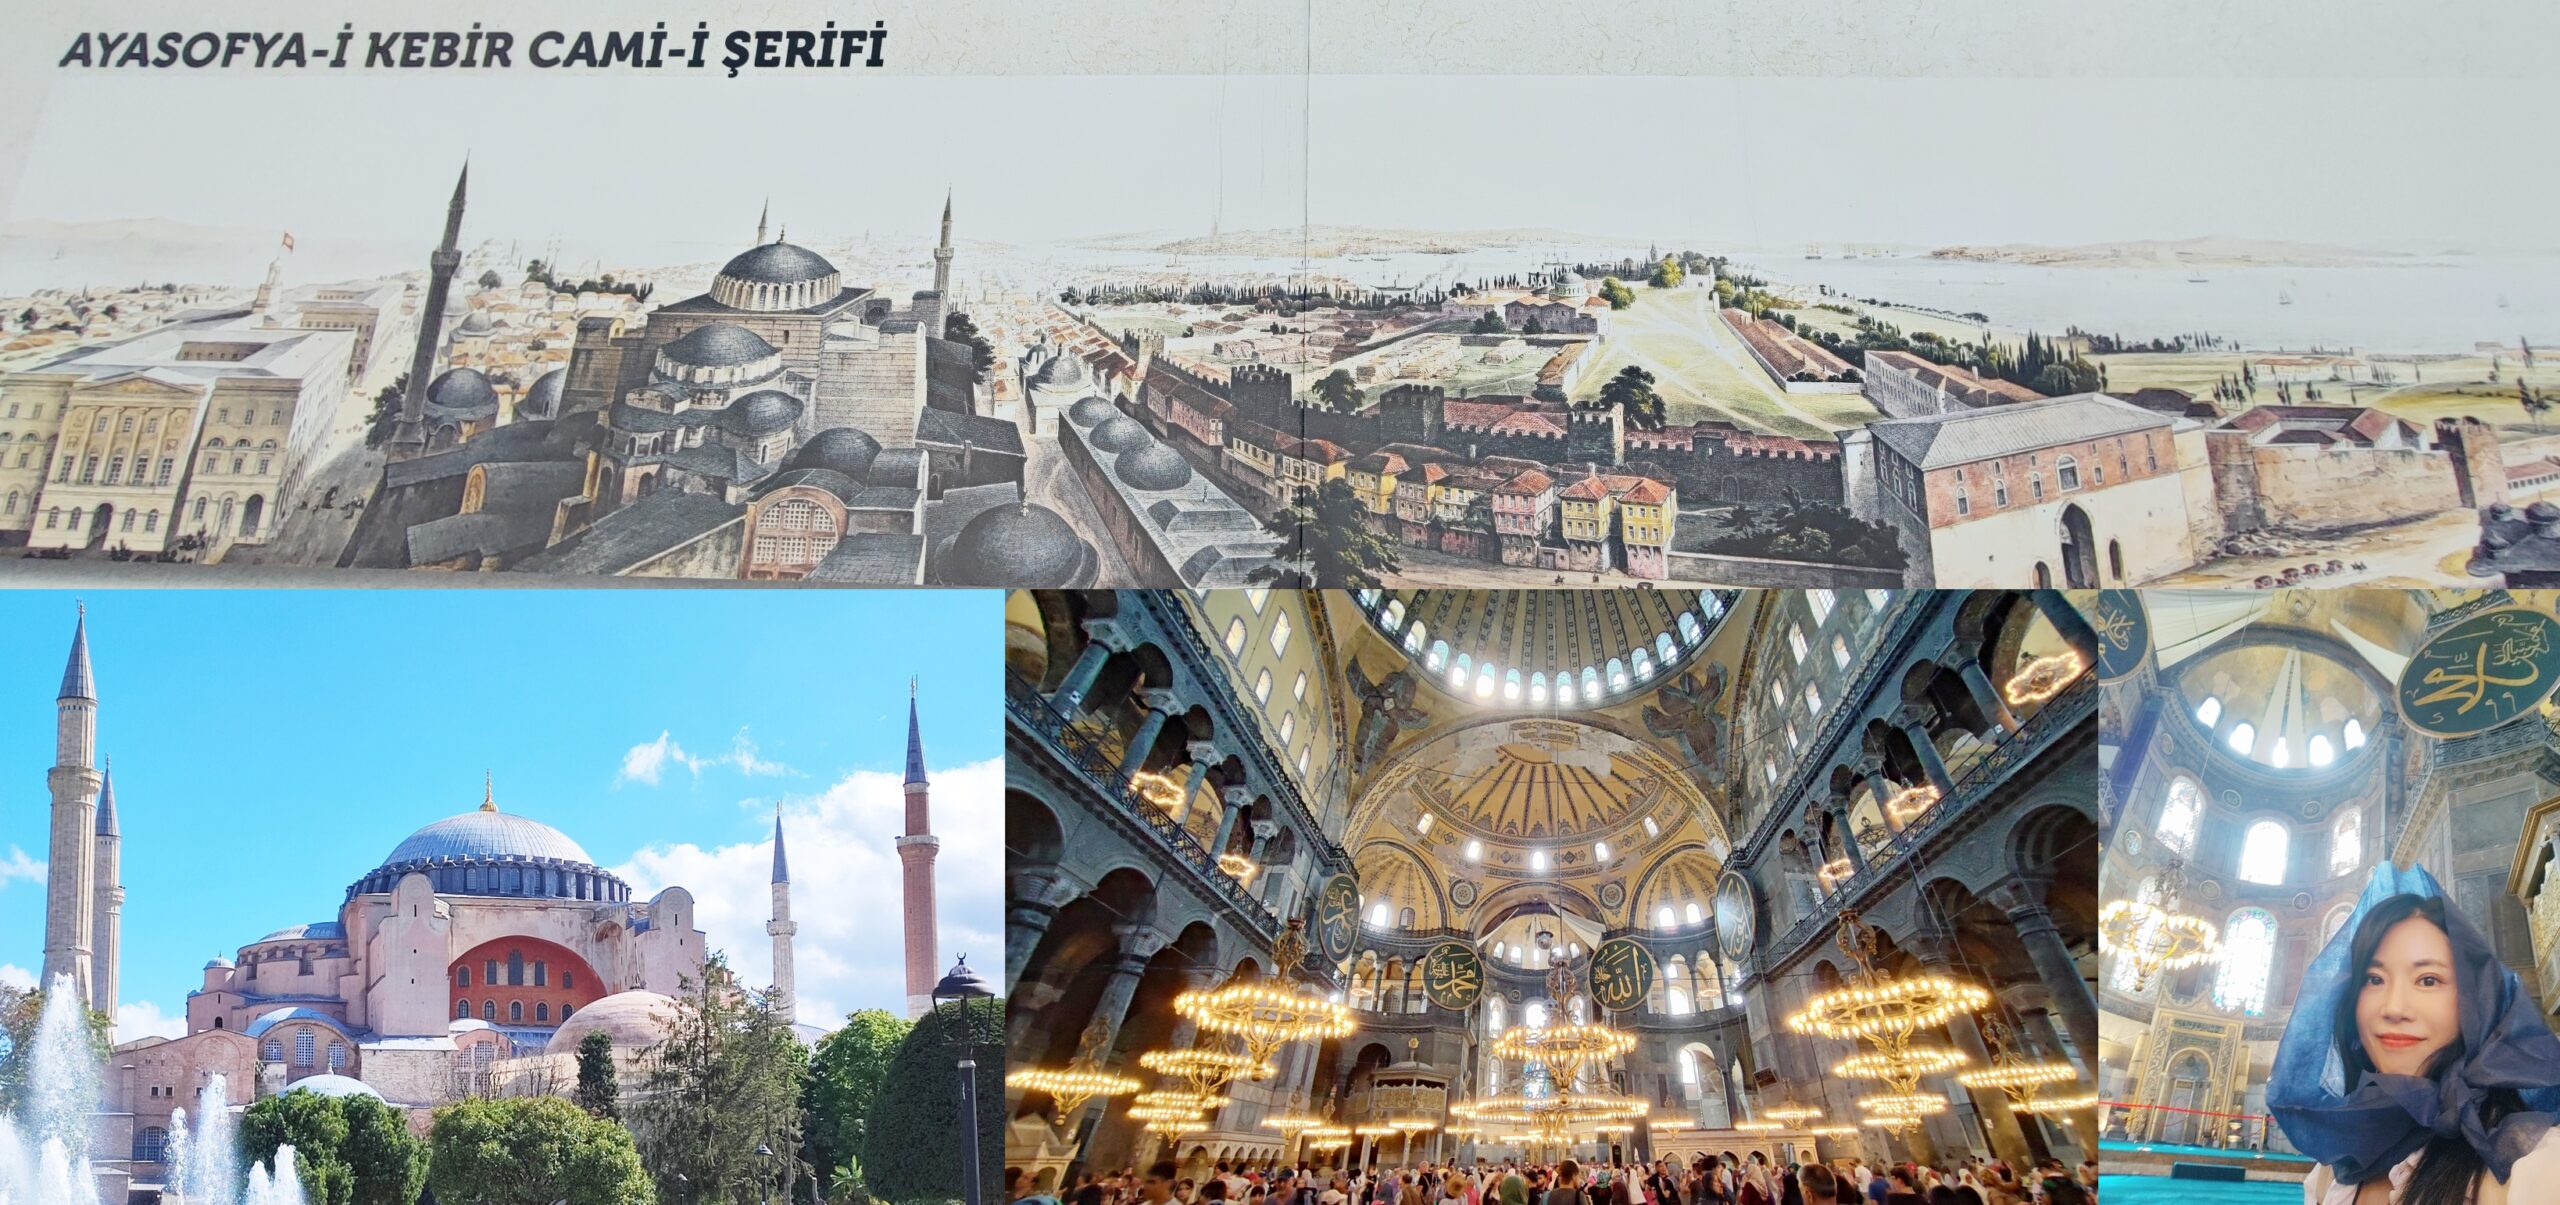 Istanbul,伊斯坦堡,伊斯坦堡歷史半島老城區,土耳其Turkiye,土耳其旅遊,聖索菲亞博物館,聖索菲亞大教堂,聖索菲亞清真寺